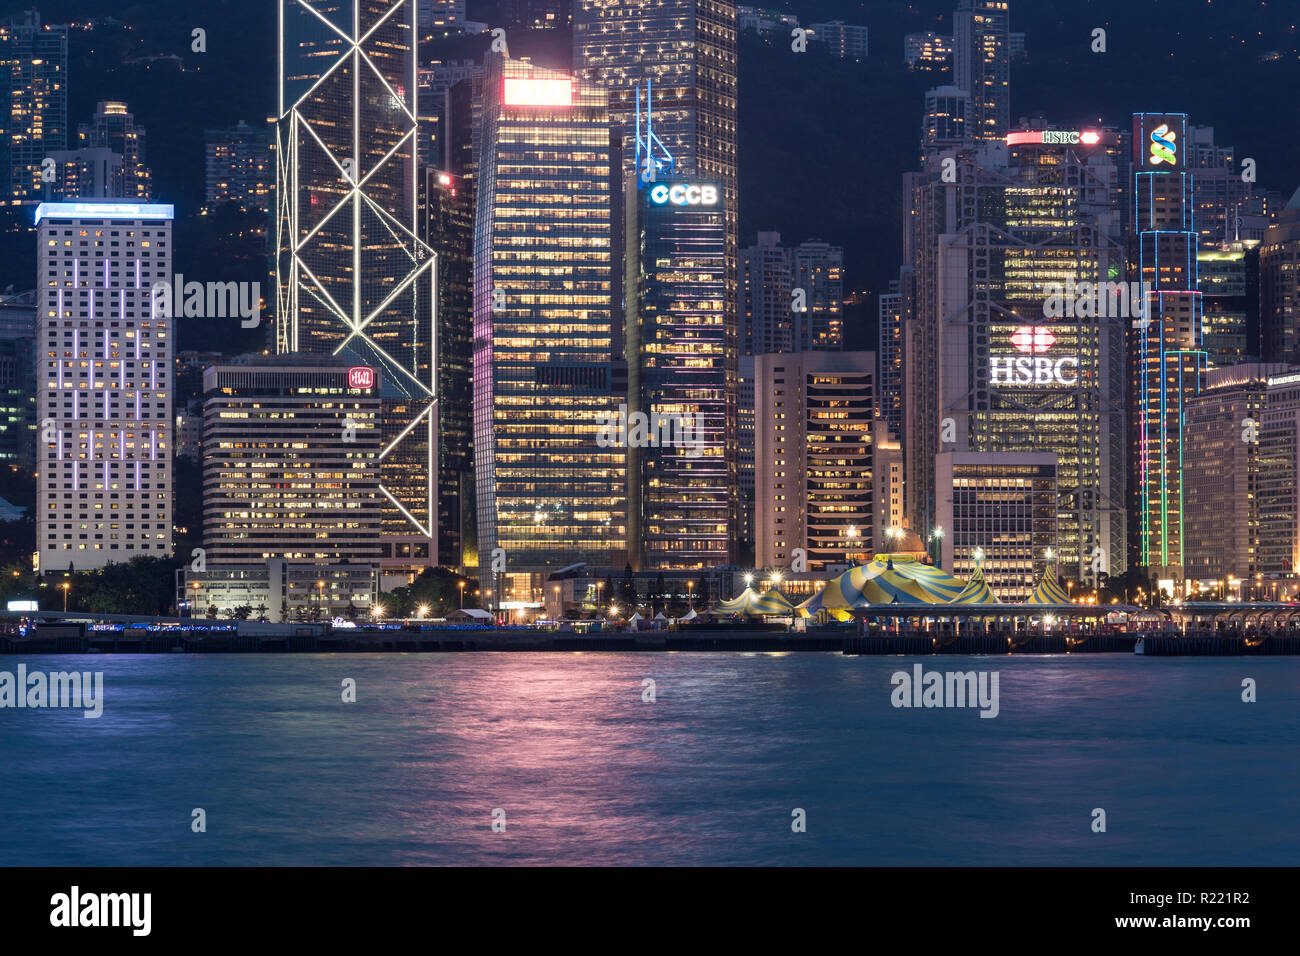 Hong Kong, China - 17. Mai 2018: Eine Nacht Blick auf die berühmte Insel Hong Kong Central Business District von Kowloon über den Victoria Harbour. Stockfoto